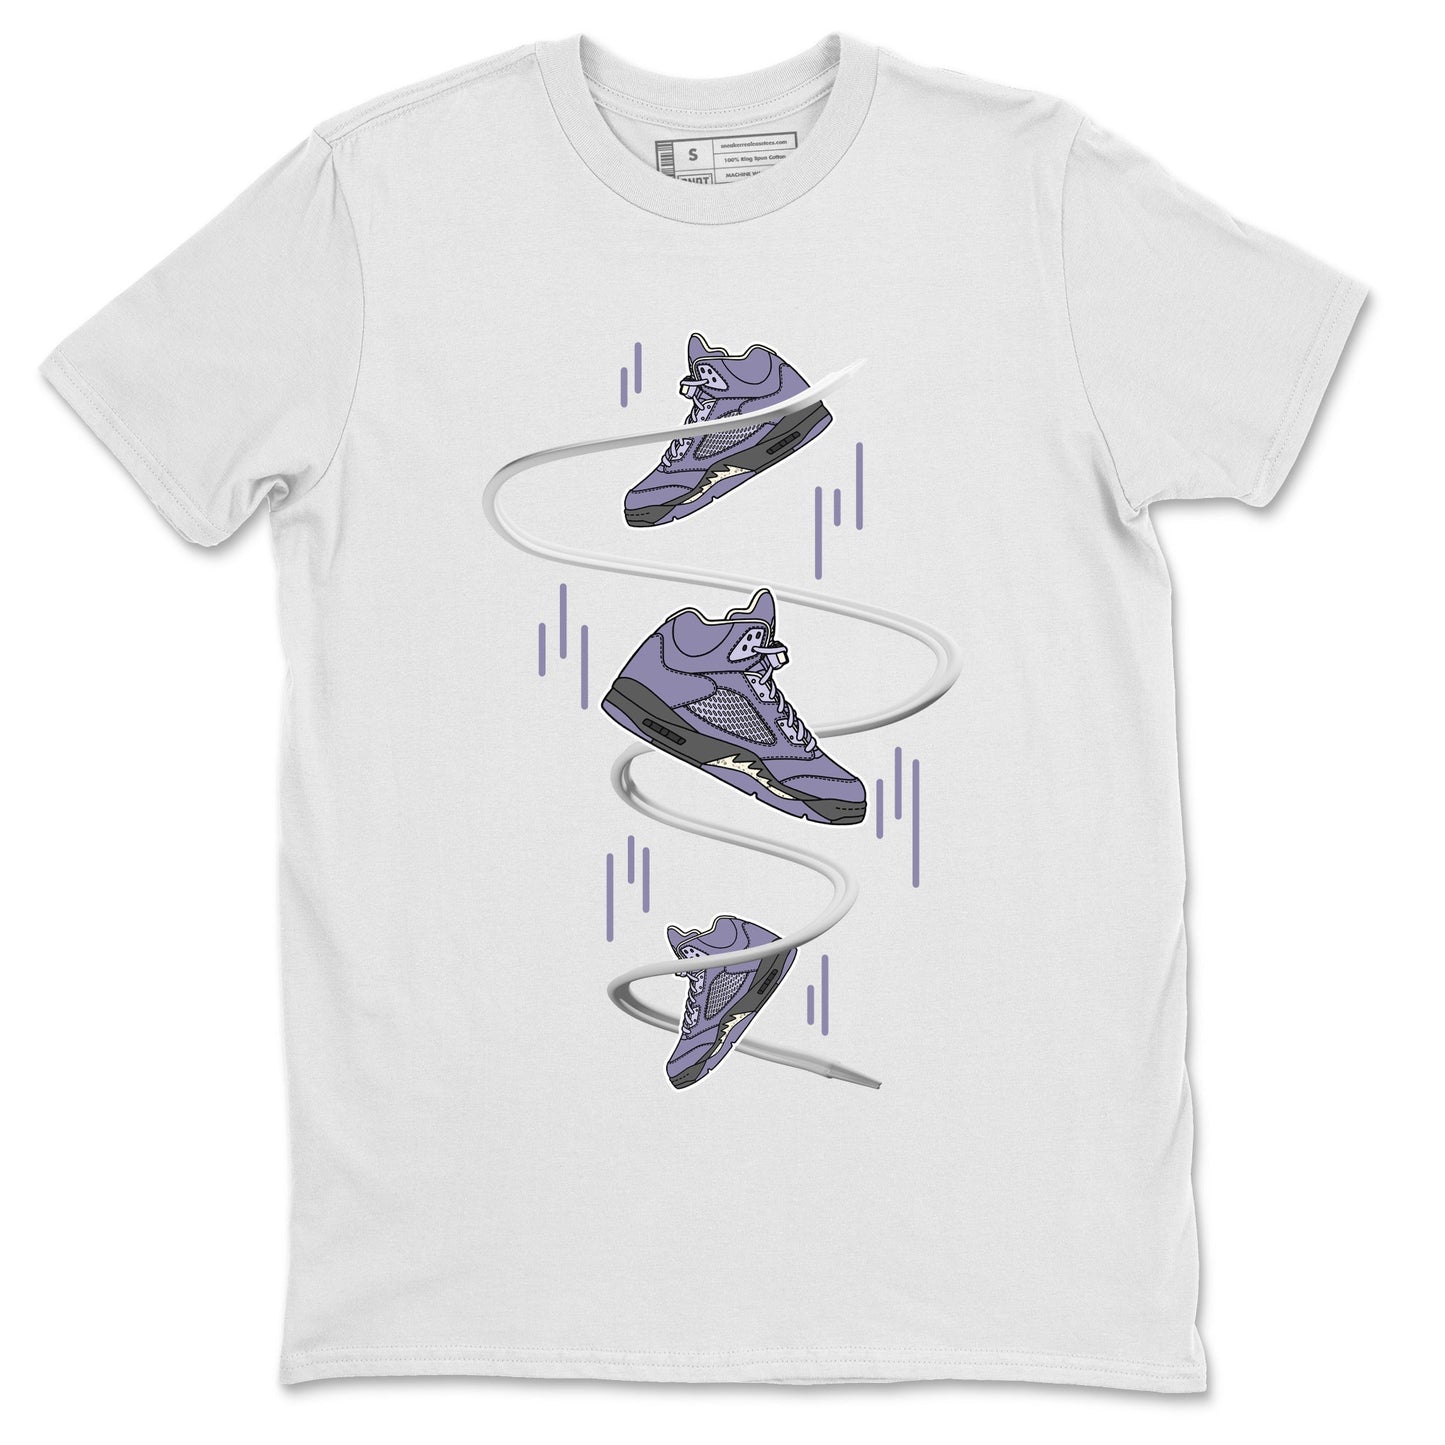 Air Jordan 5 Indigo Haze Sneaker Match Tees Sneaker Drop Sneaker Tees AJ5 Indigo Haze Sneaker Release Tees Unisex Shirts White 2